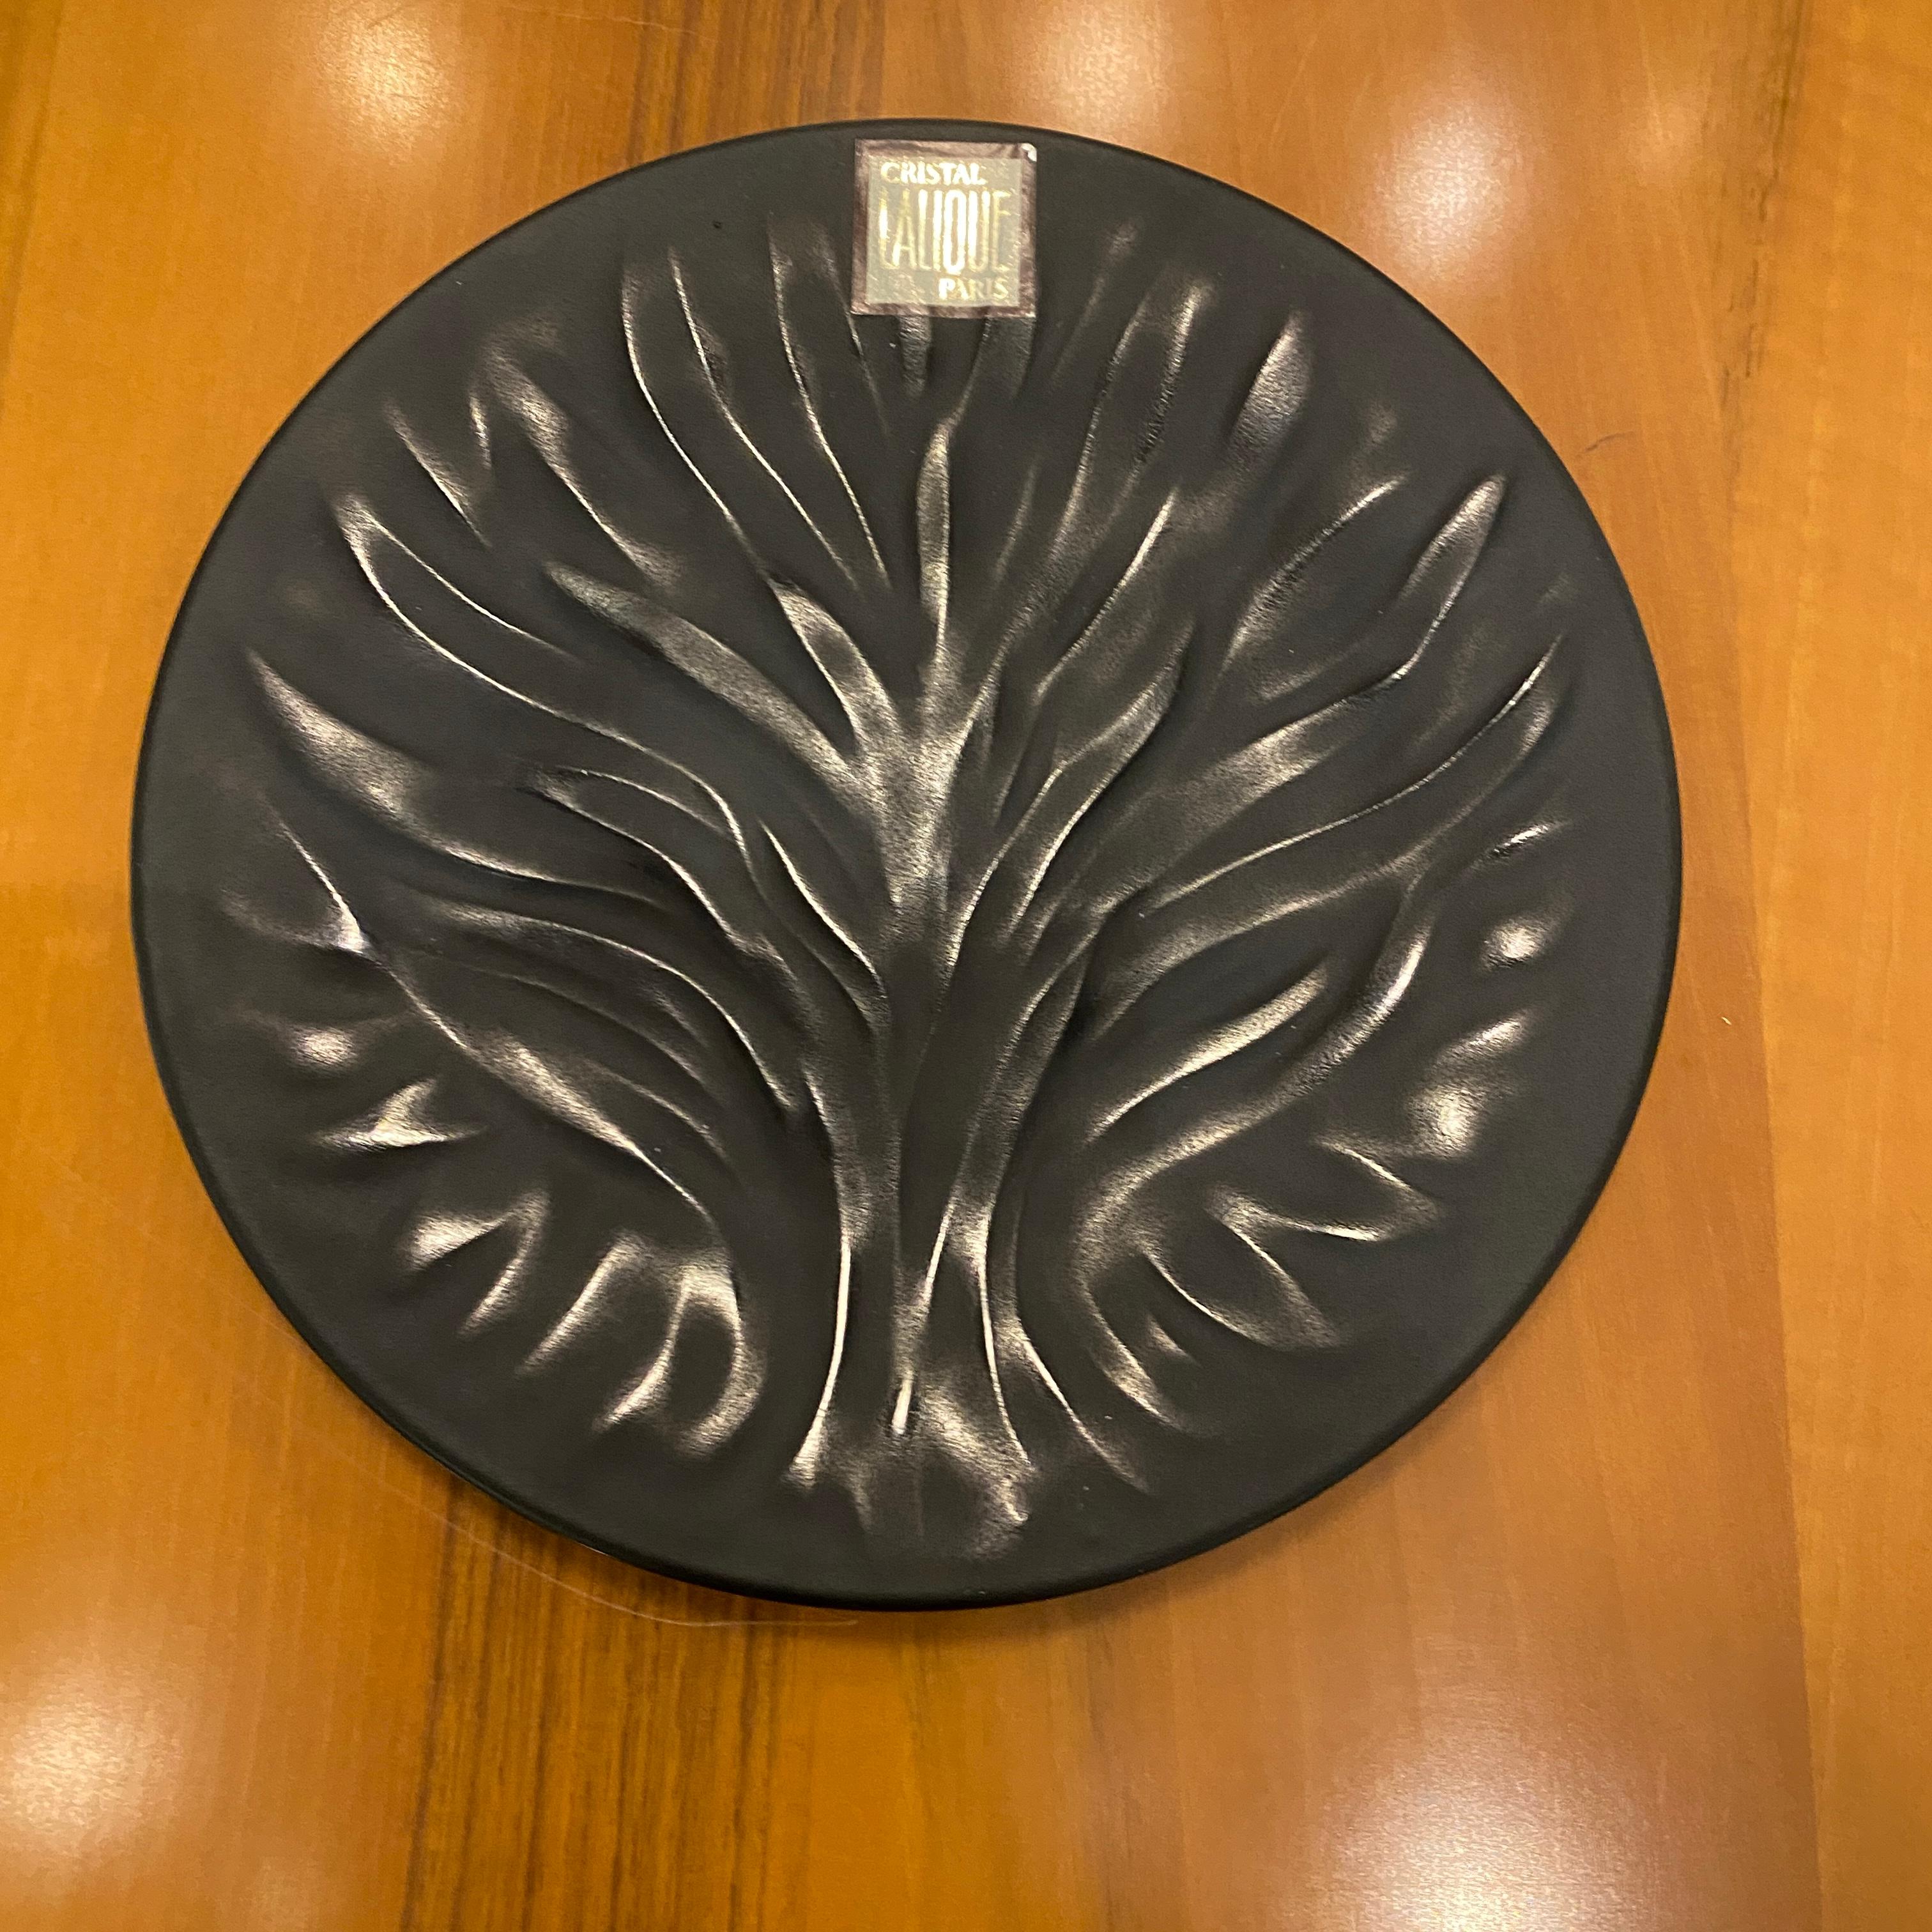 French Black Cristal Algues Plates by Maison Lalique. For Sale